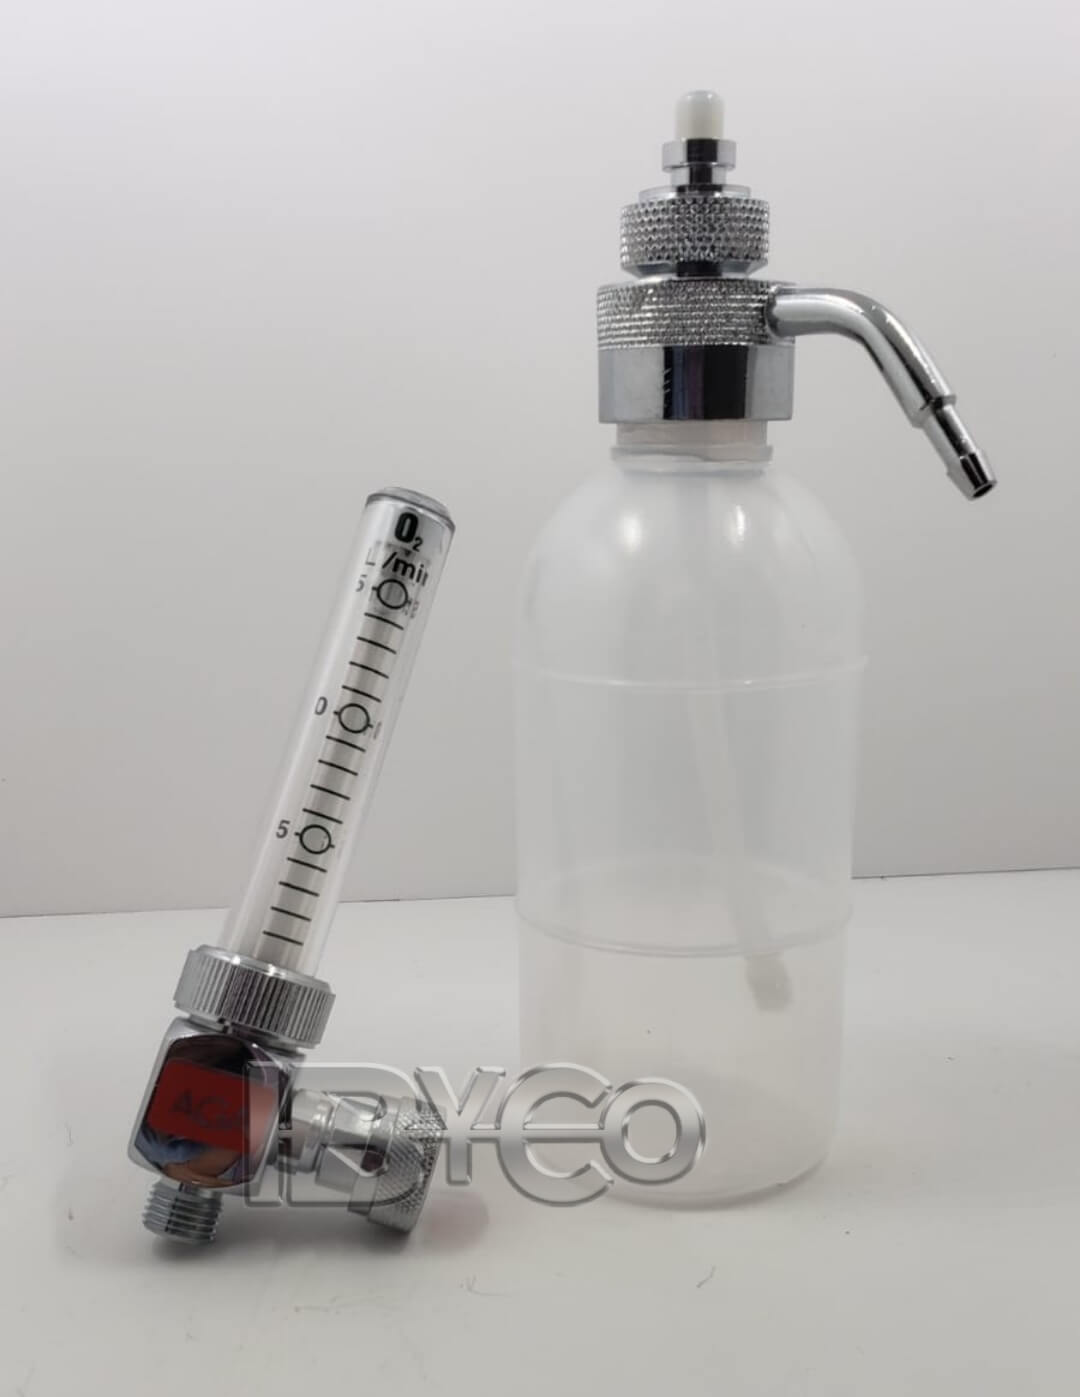 Flujometro de oxígeno medicinal, sencillo de 0 - 15 lpm con humedecedor reusable